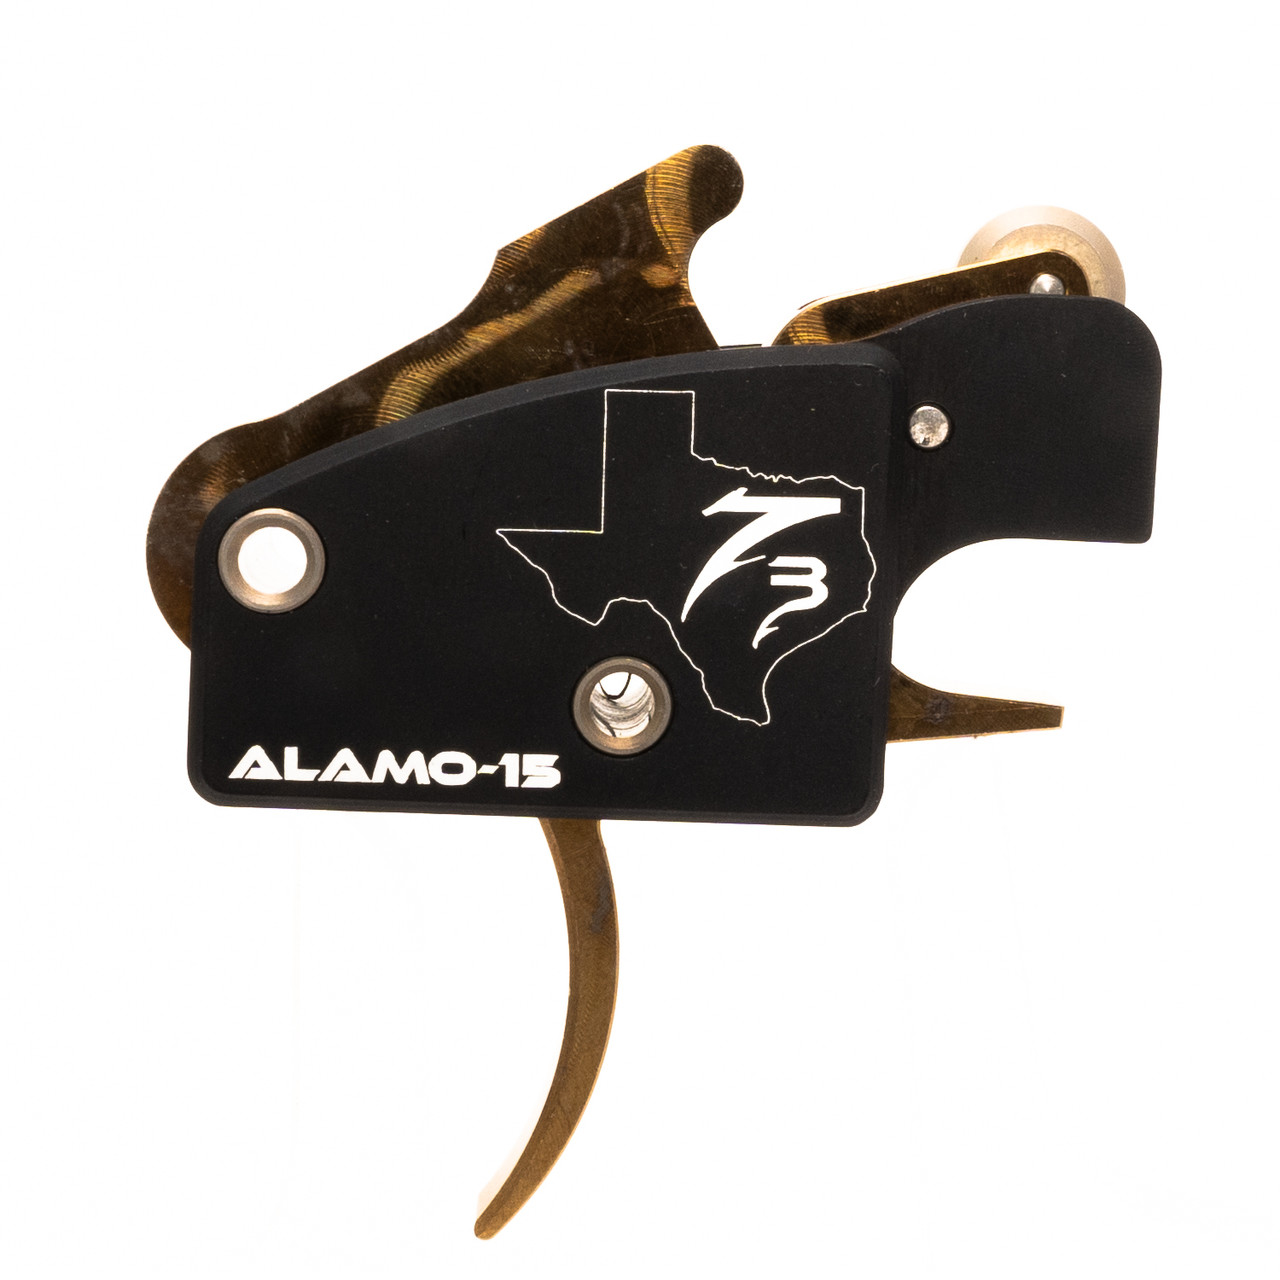 Alamo 15 trigger | Alamo 15 trigger | Alamo 15 trigger for sale